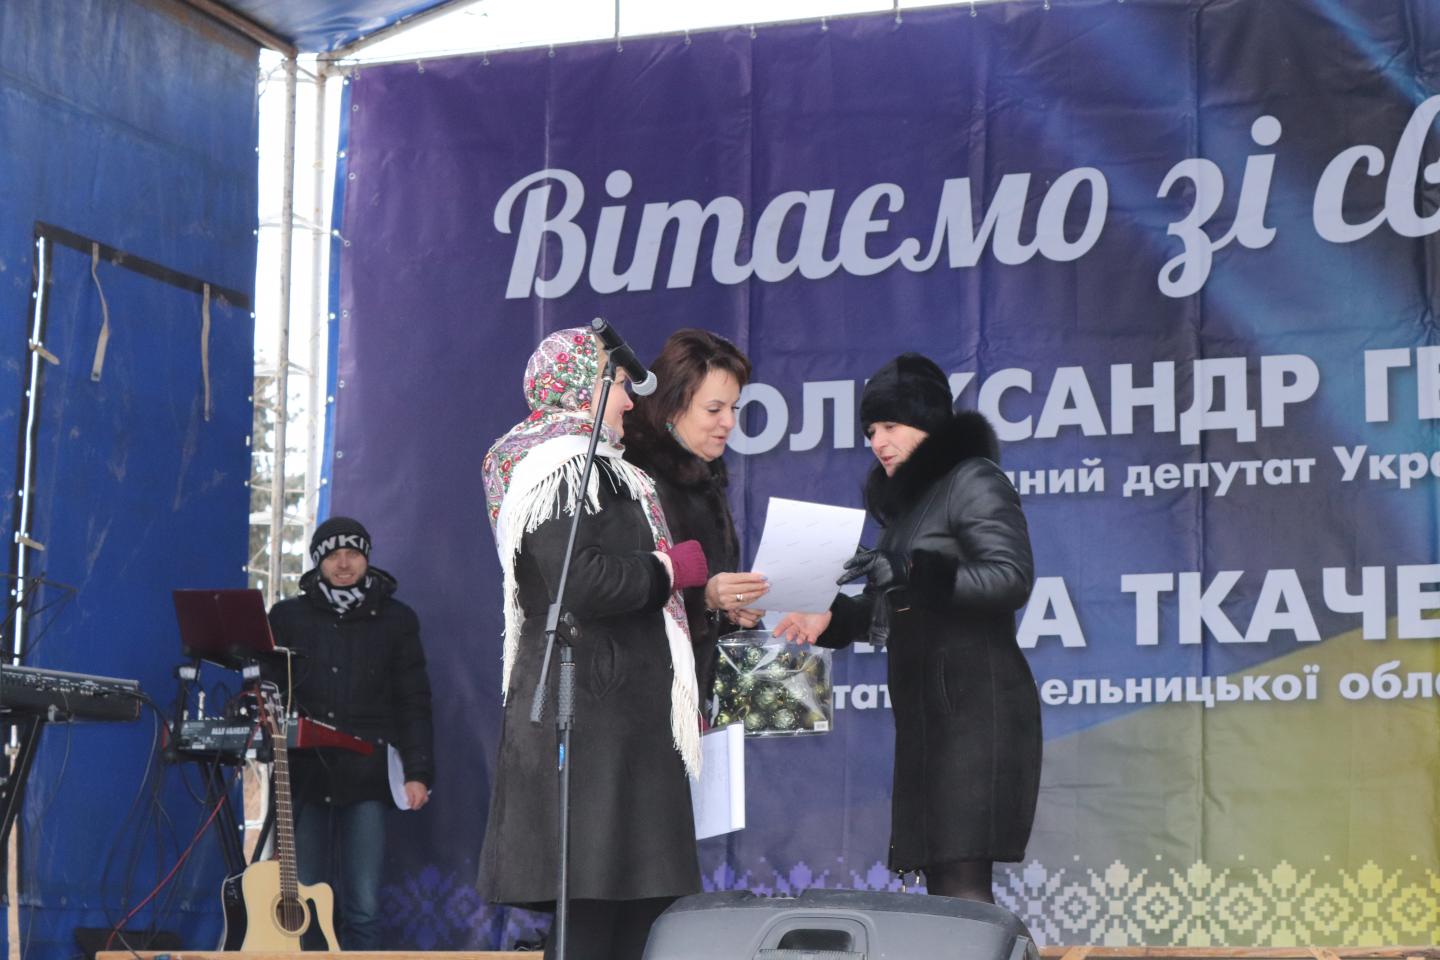 http://dunrada.gov.ua/uploadfile/archive_news/2021/12/27/2021-12-27_3761/images/images-57932.jpg